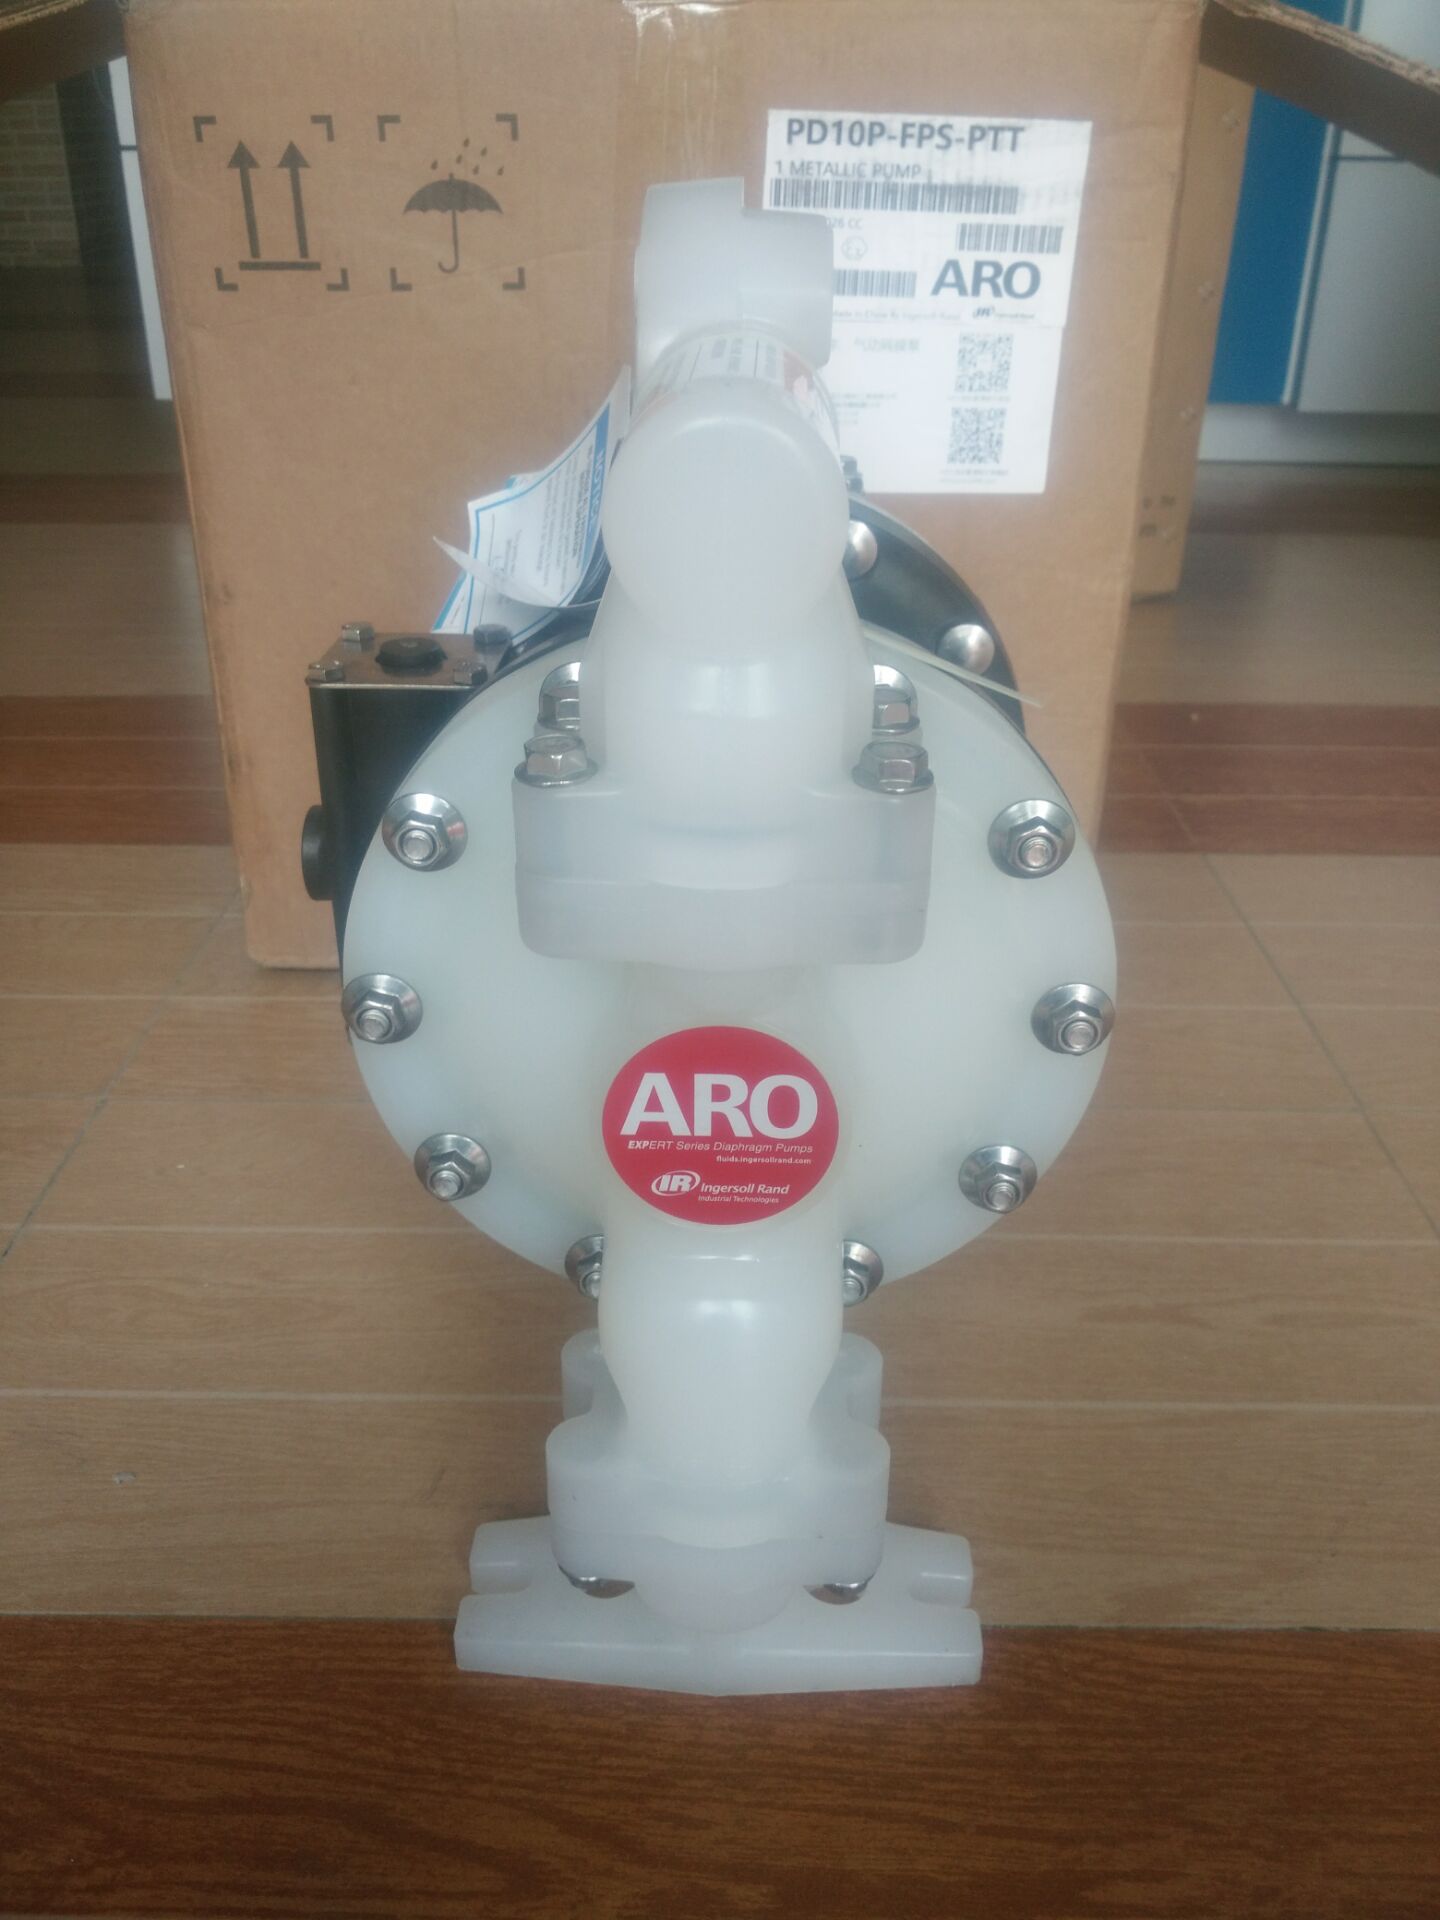 供应英格索兰隔膜泵、ARO隔膜泵、PP聚丙烯隔膜泵、进口隔膜泵、涂料泵。溶剂泵